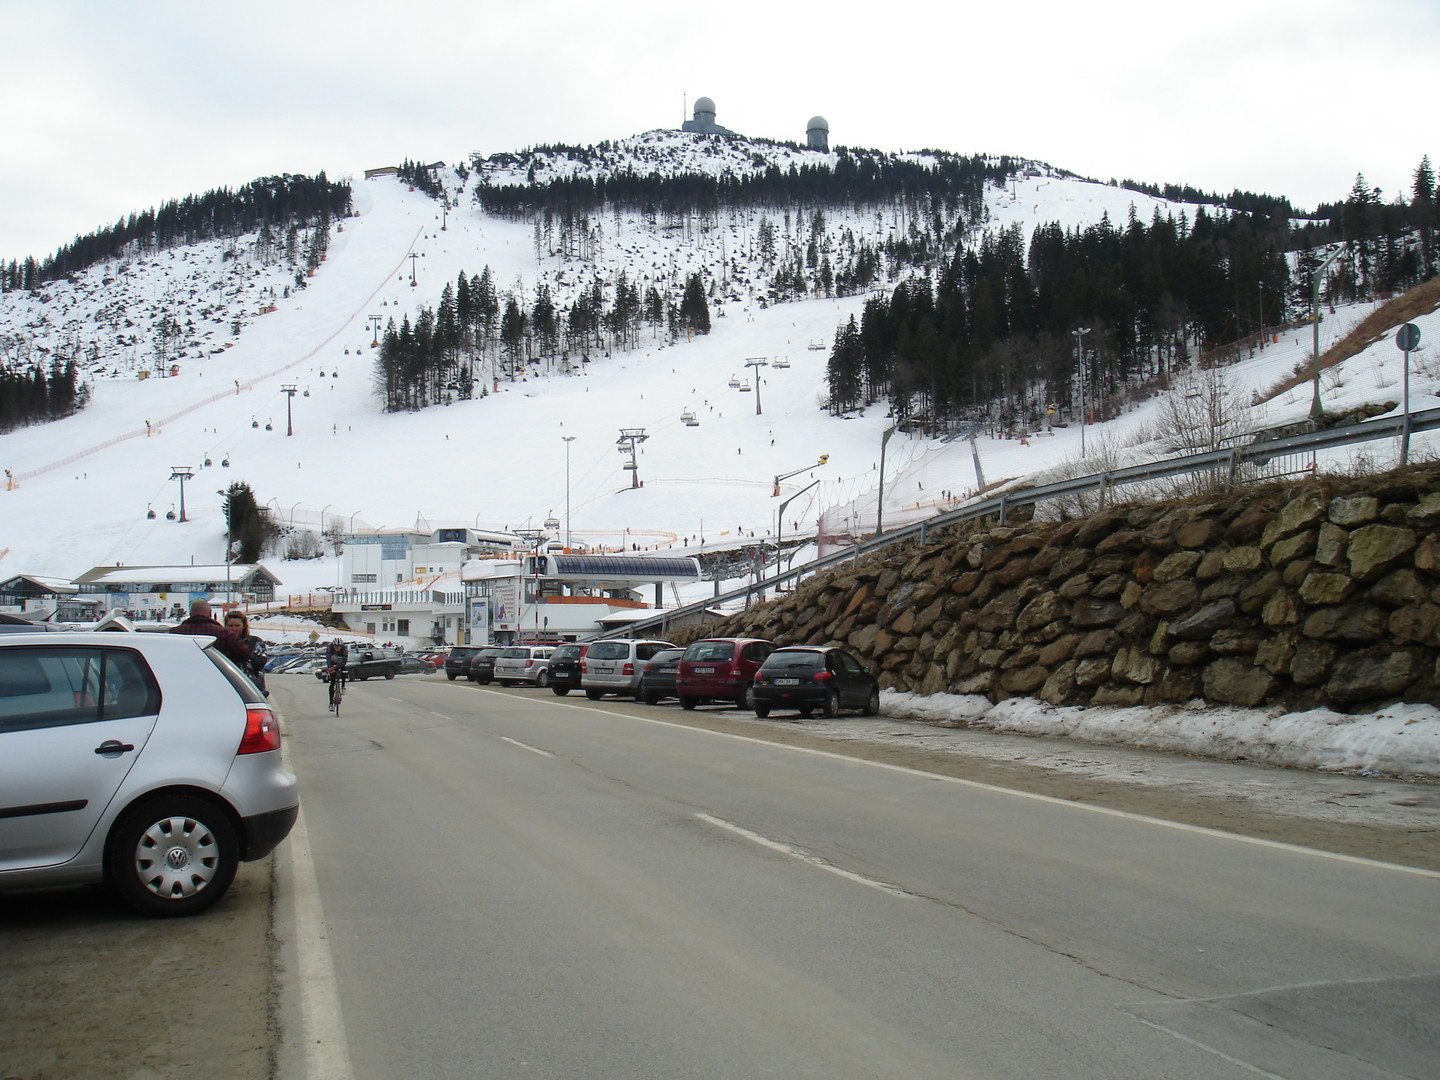 Mitte März 2011 - mehr Ski- als Radbetrieb